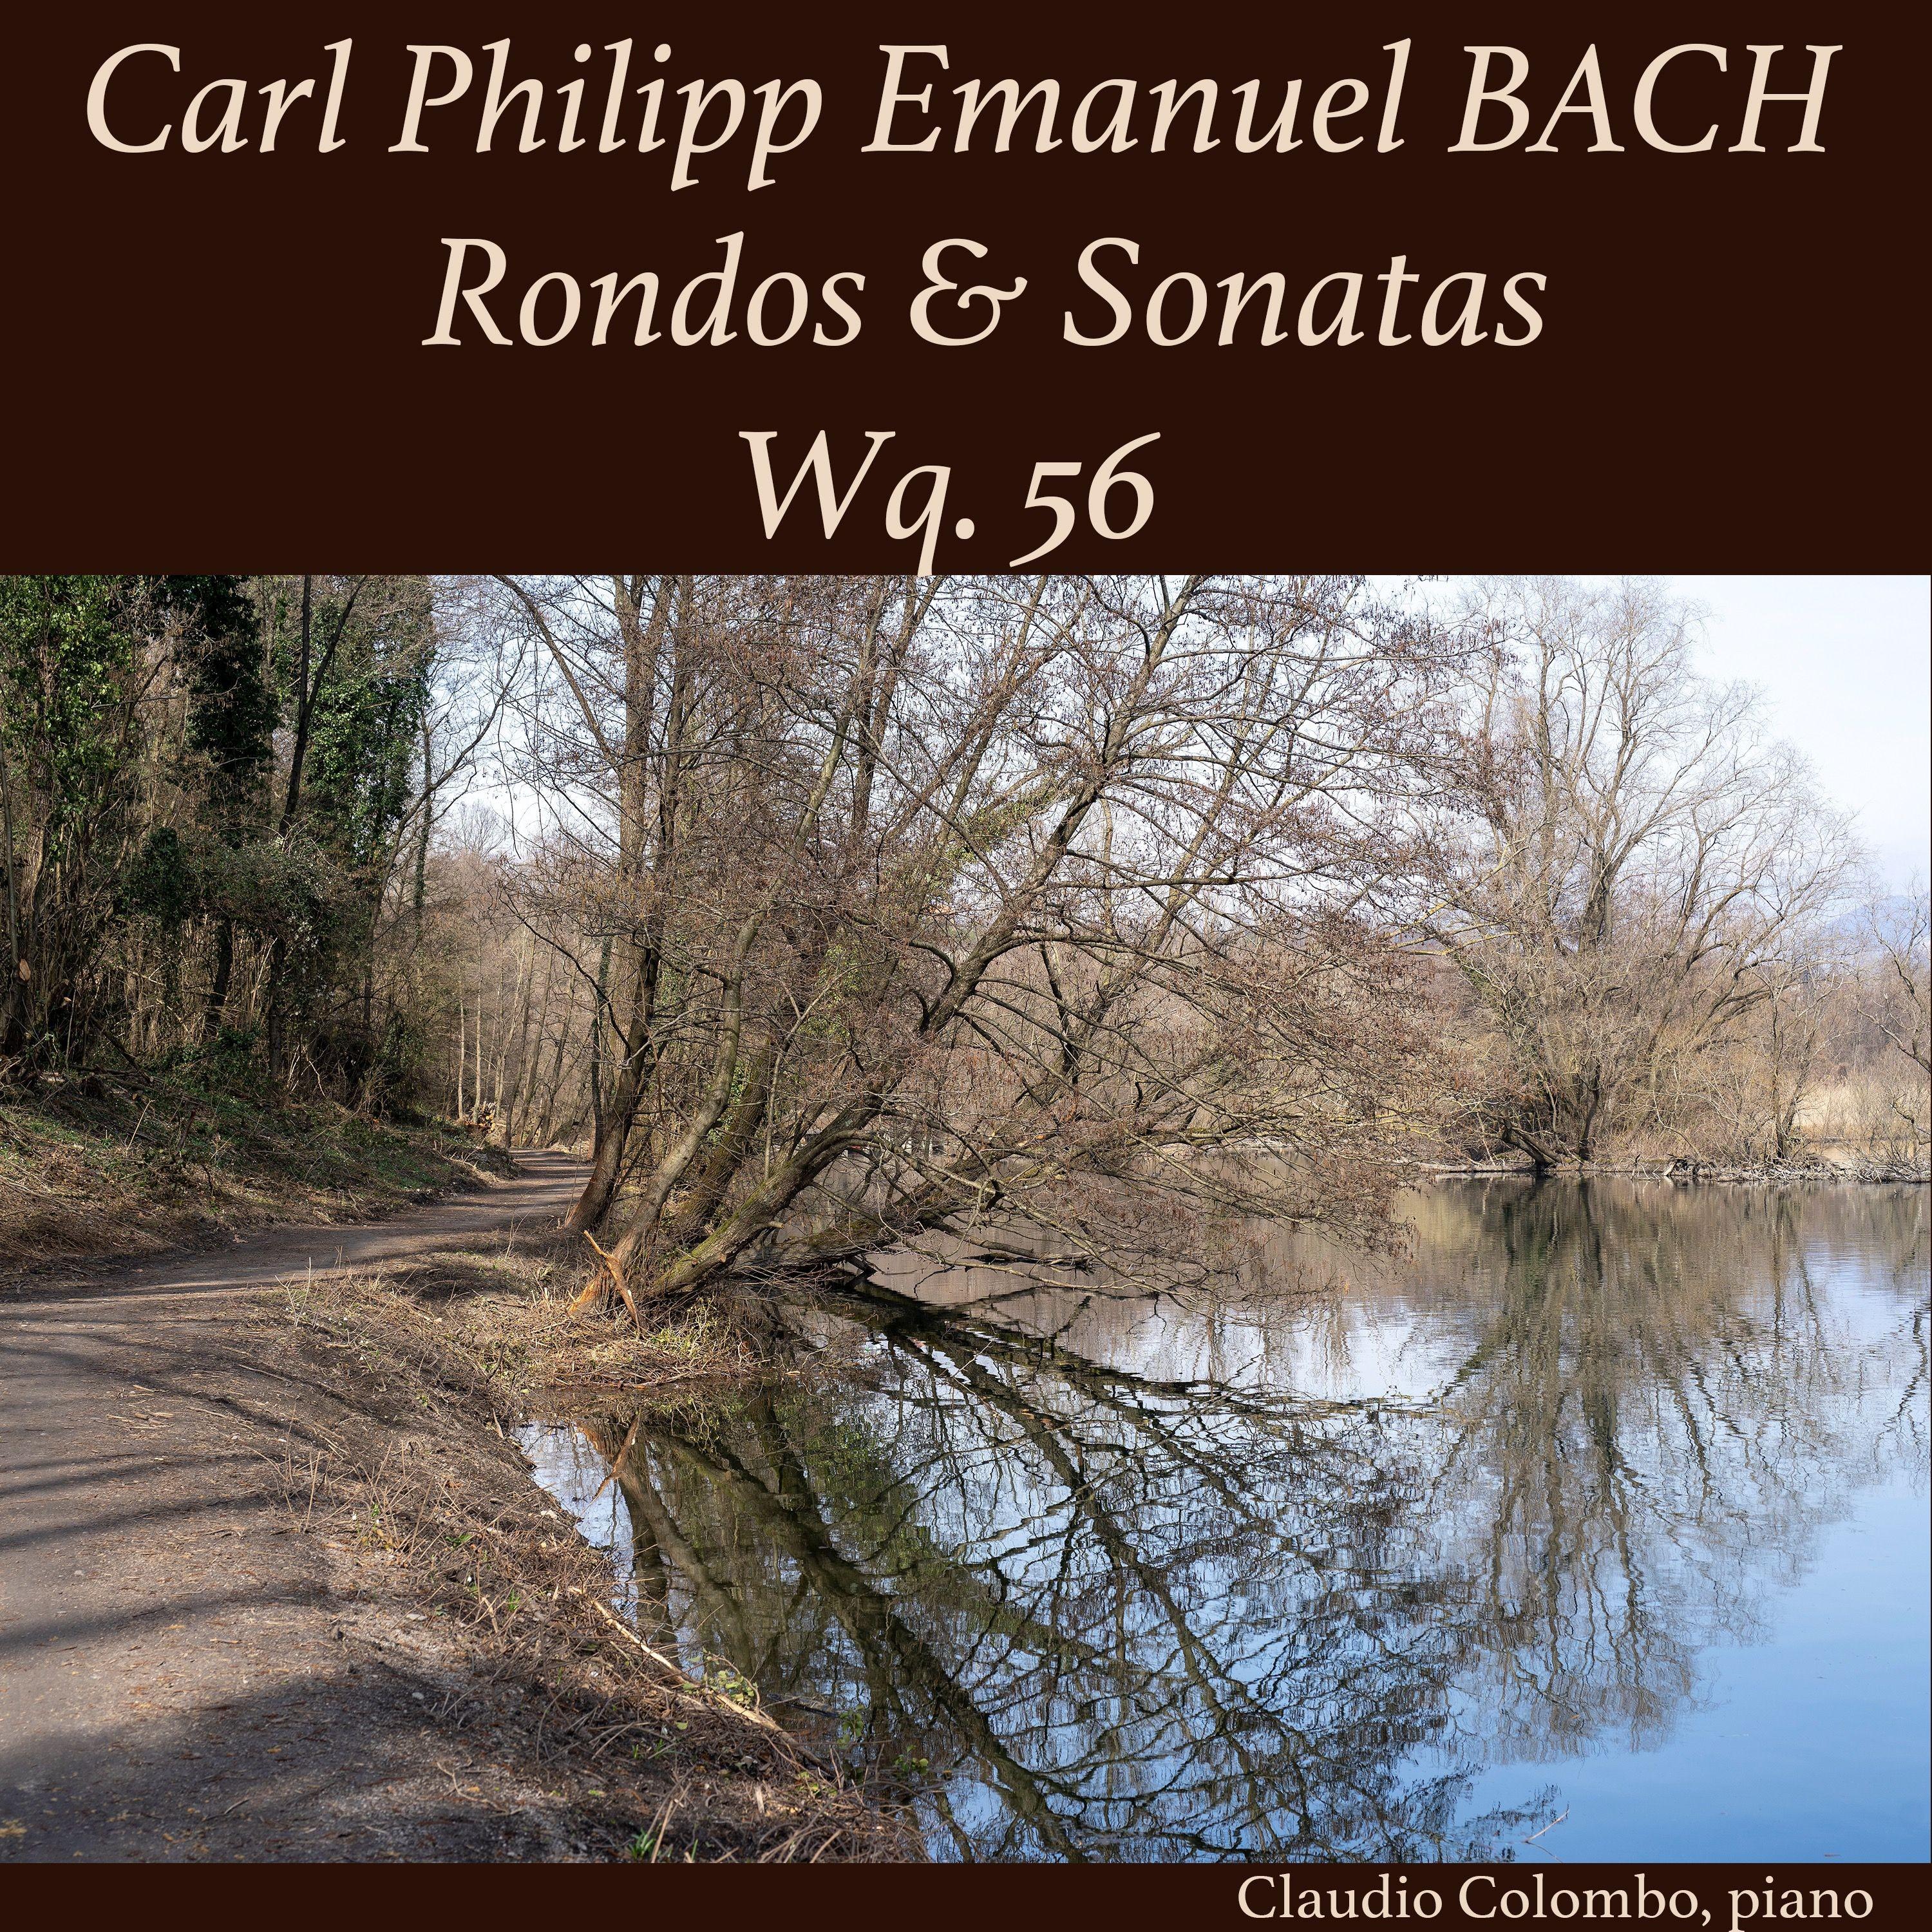 3 Sonaten und 3 Rondos fü r Kenner und Liebhaber, Wq. 56: Sonata II in F Major, II. Presto